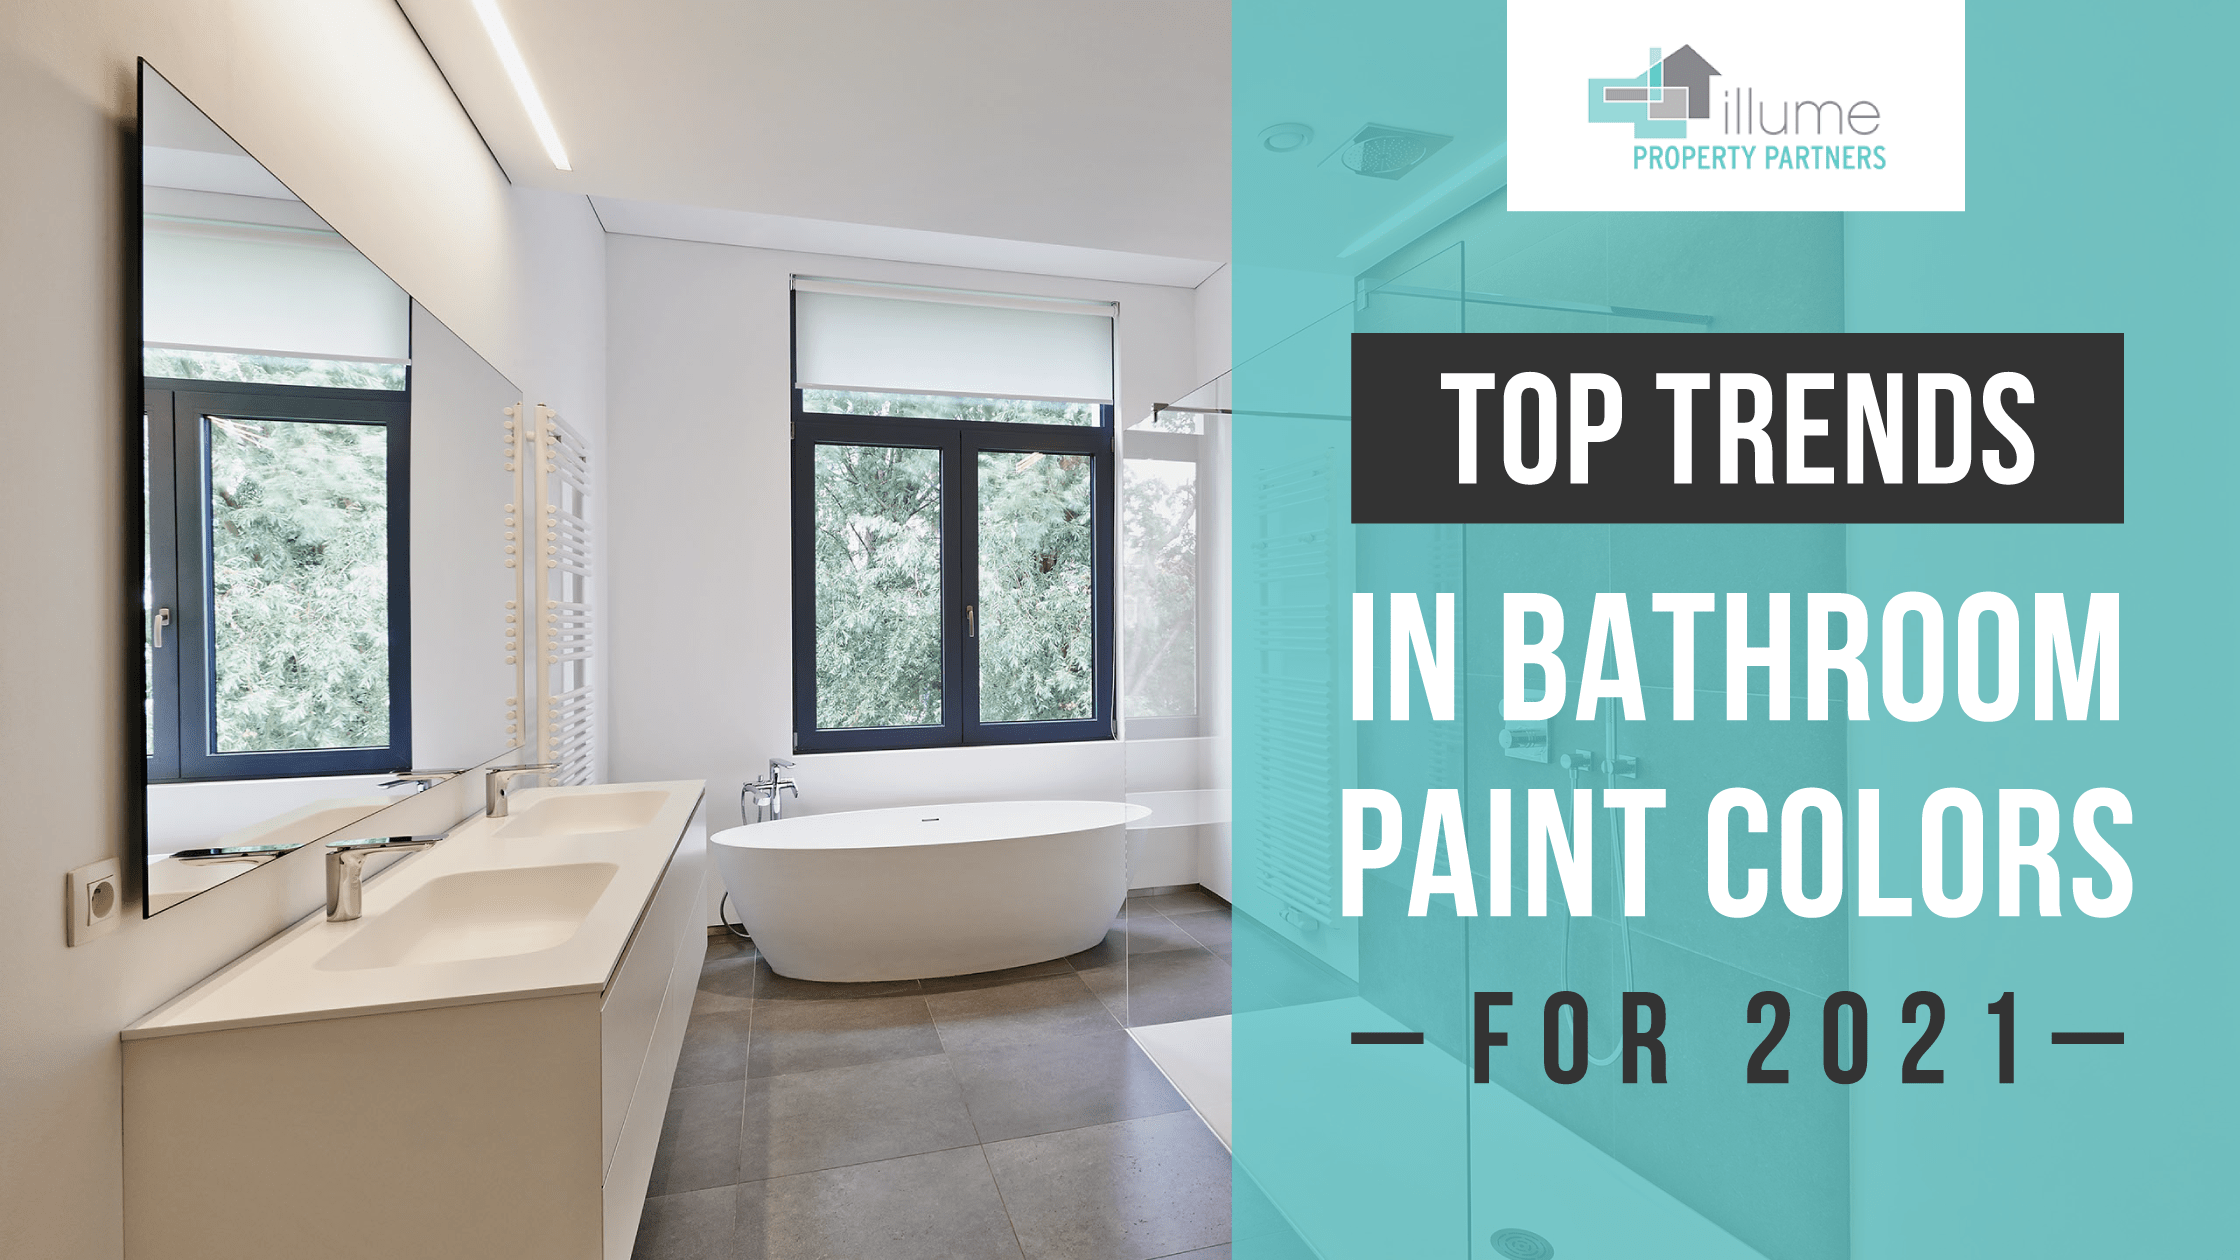 Top Trends in Bathroom Paint Colors in 2021